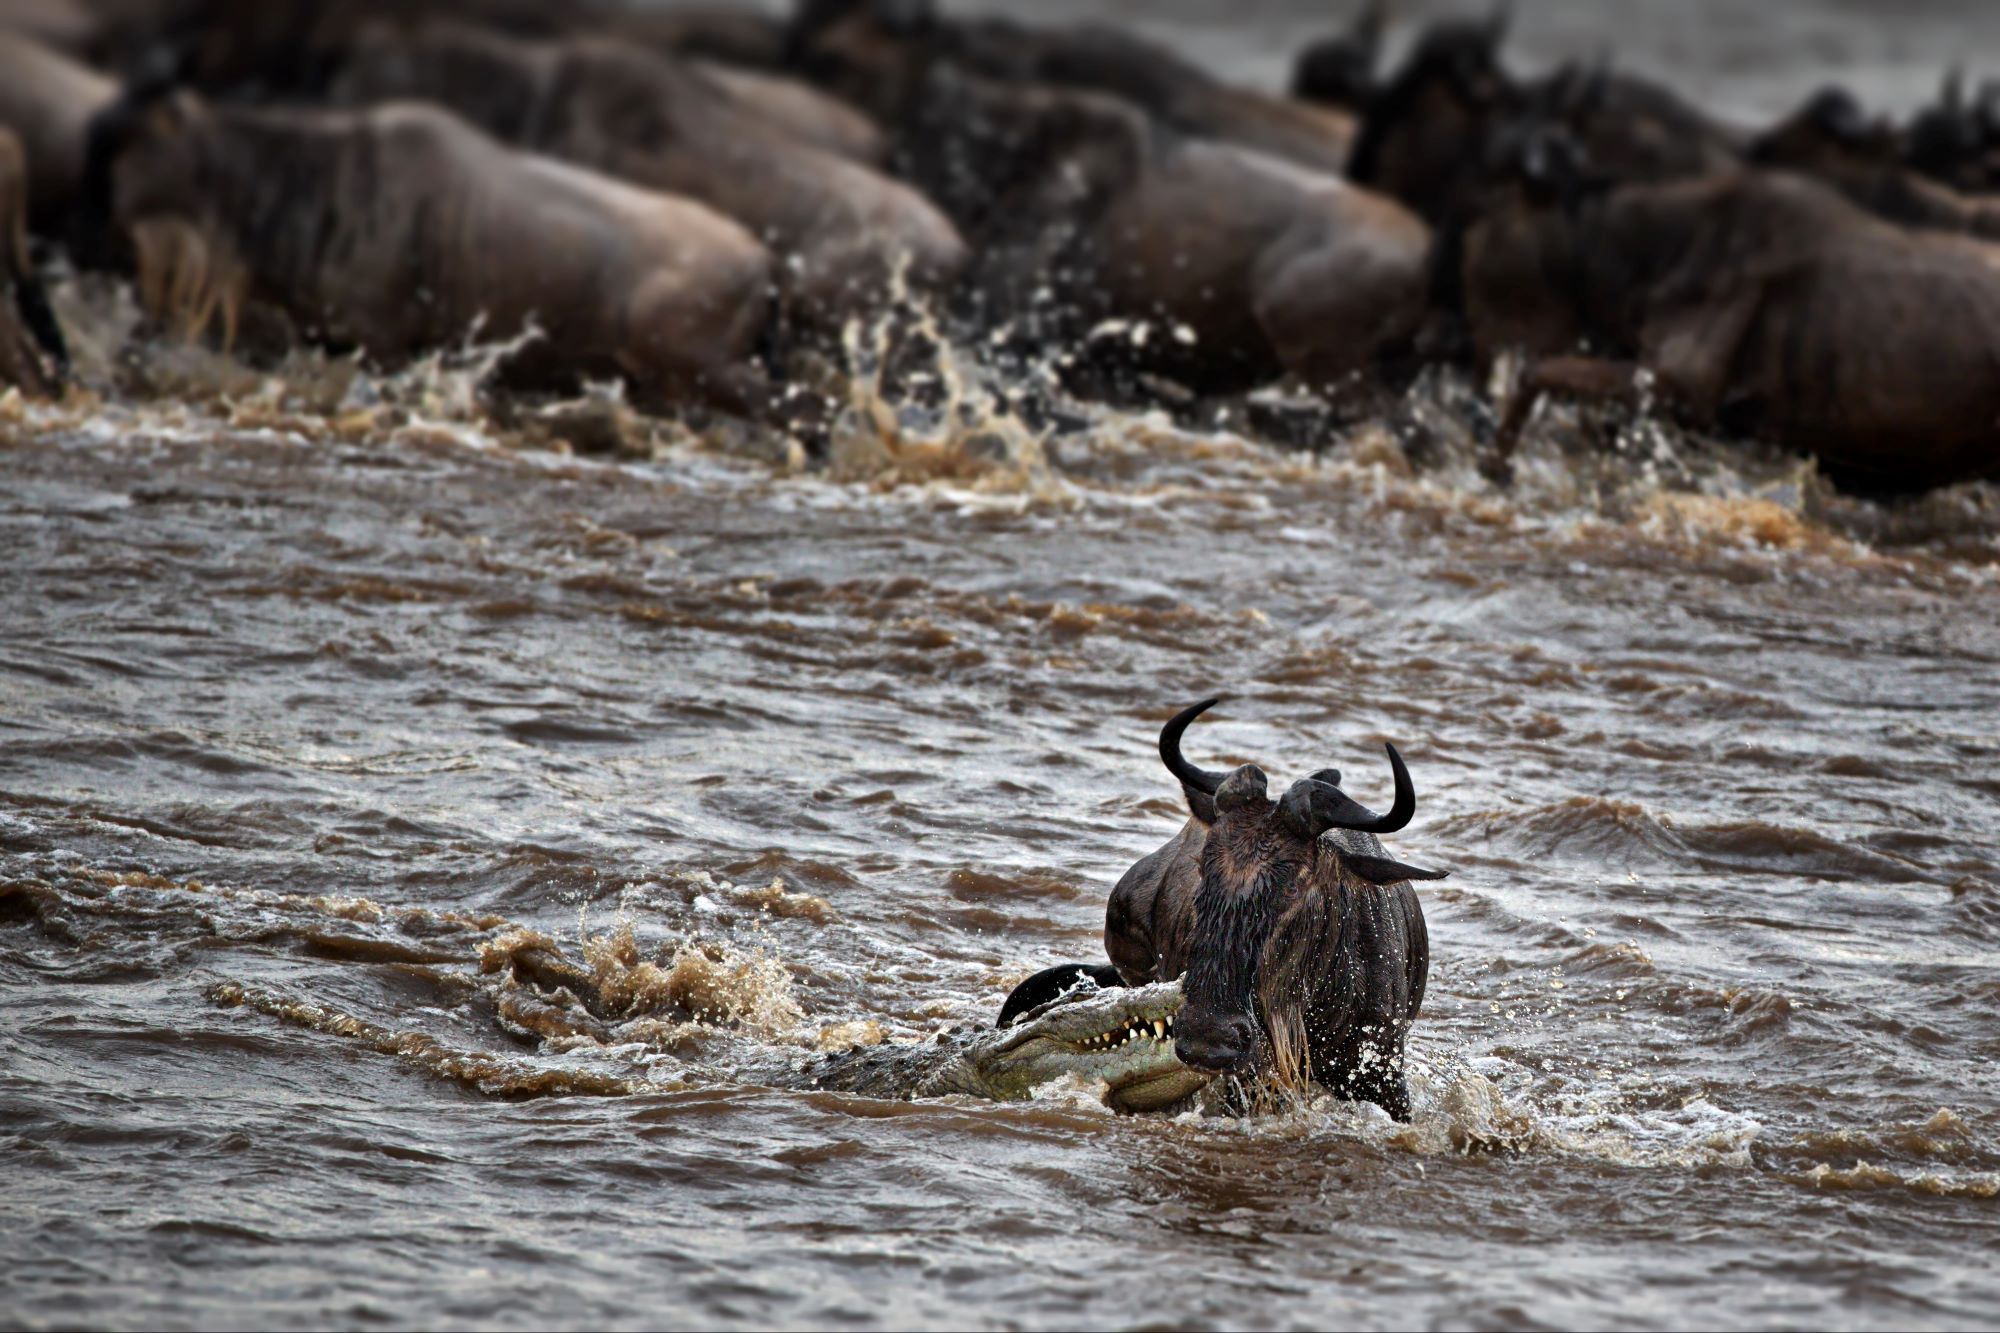 Wildebeest in a river in an open field in Masai Mara, Kenya-herd mentality